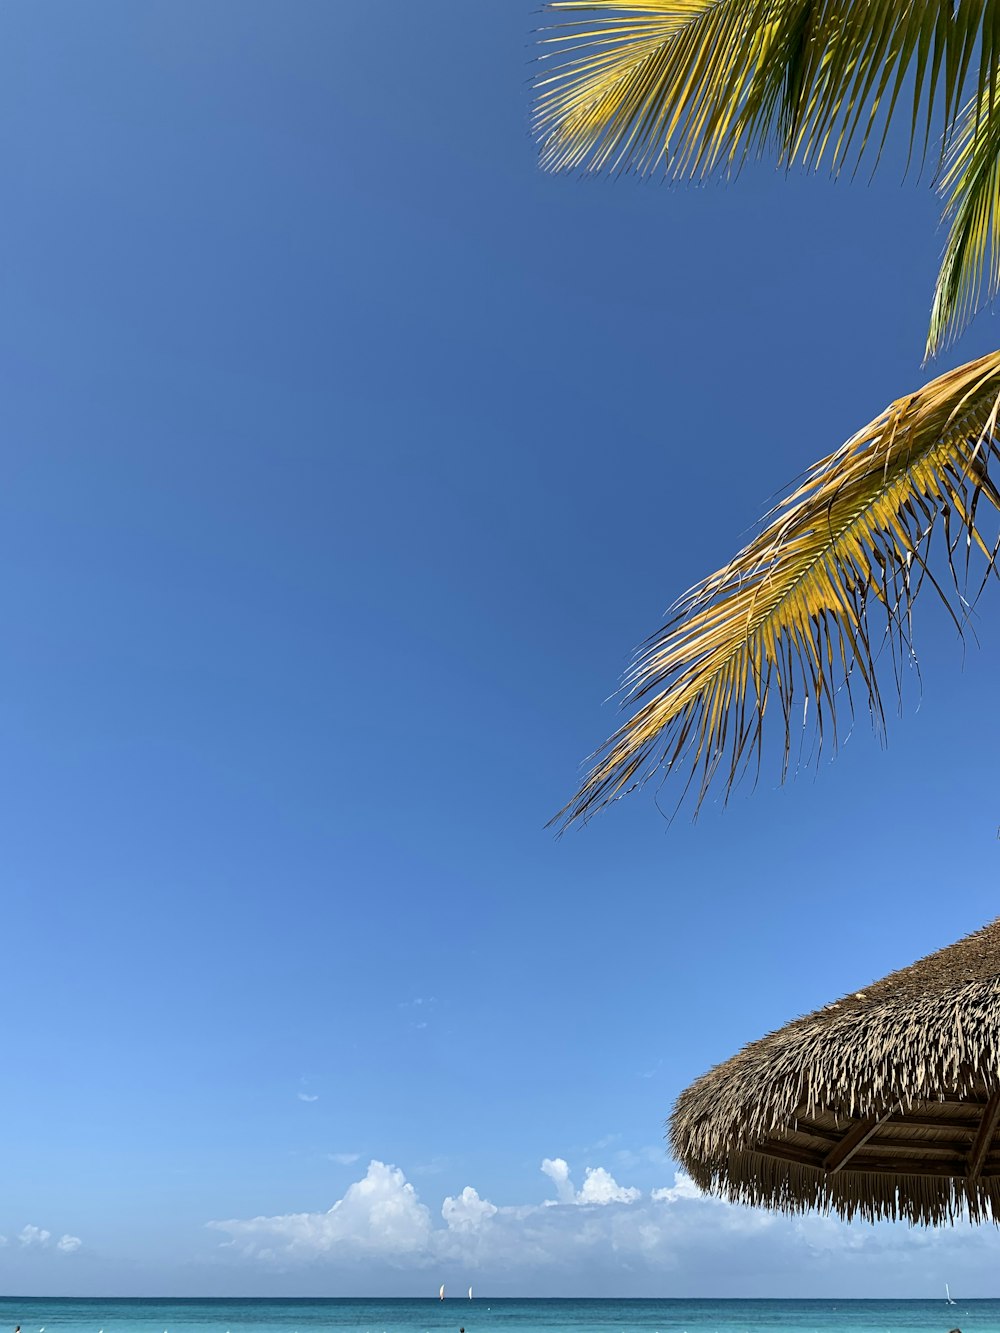 a beach with a palm tree and a blue sky